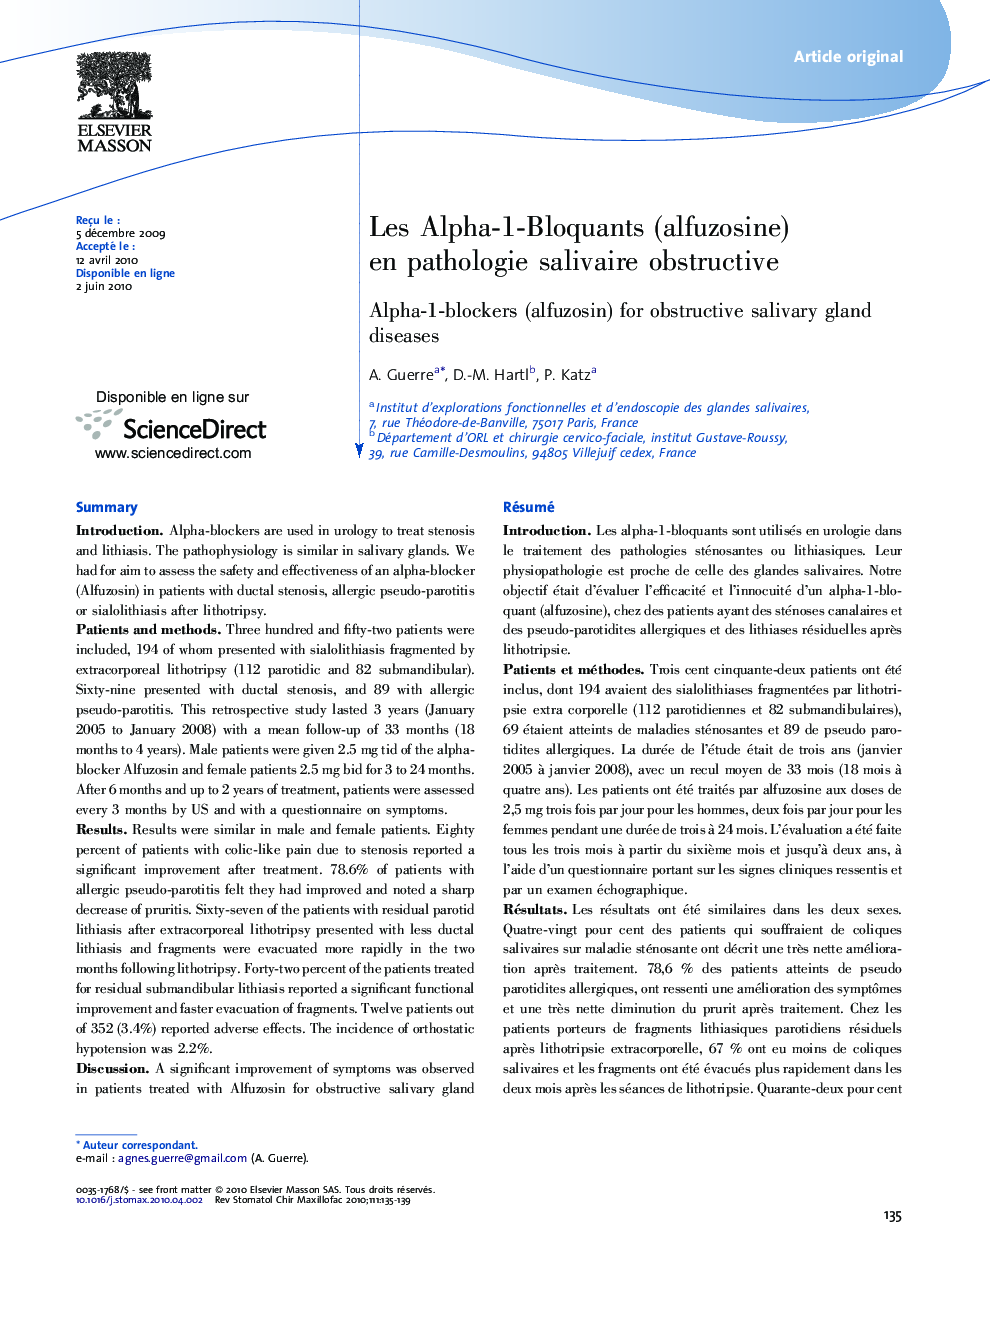 Les Alpha-1-Bloquants (alfuzosine) en pathologie salivaire obstructive